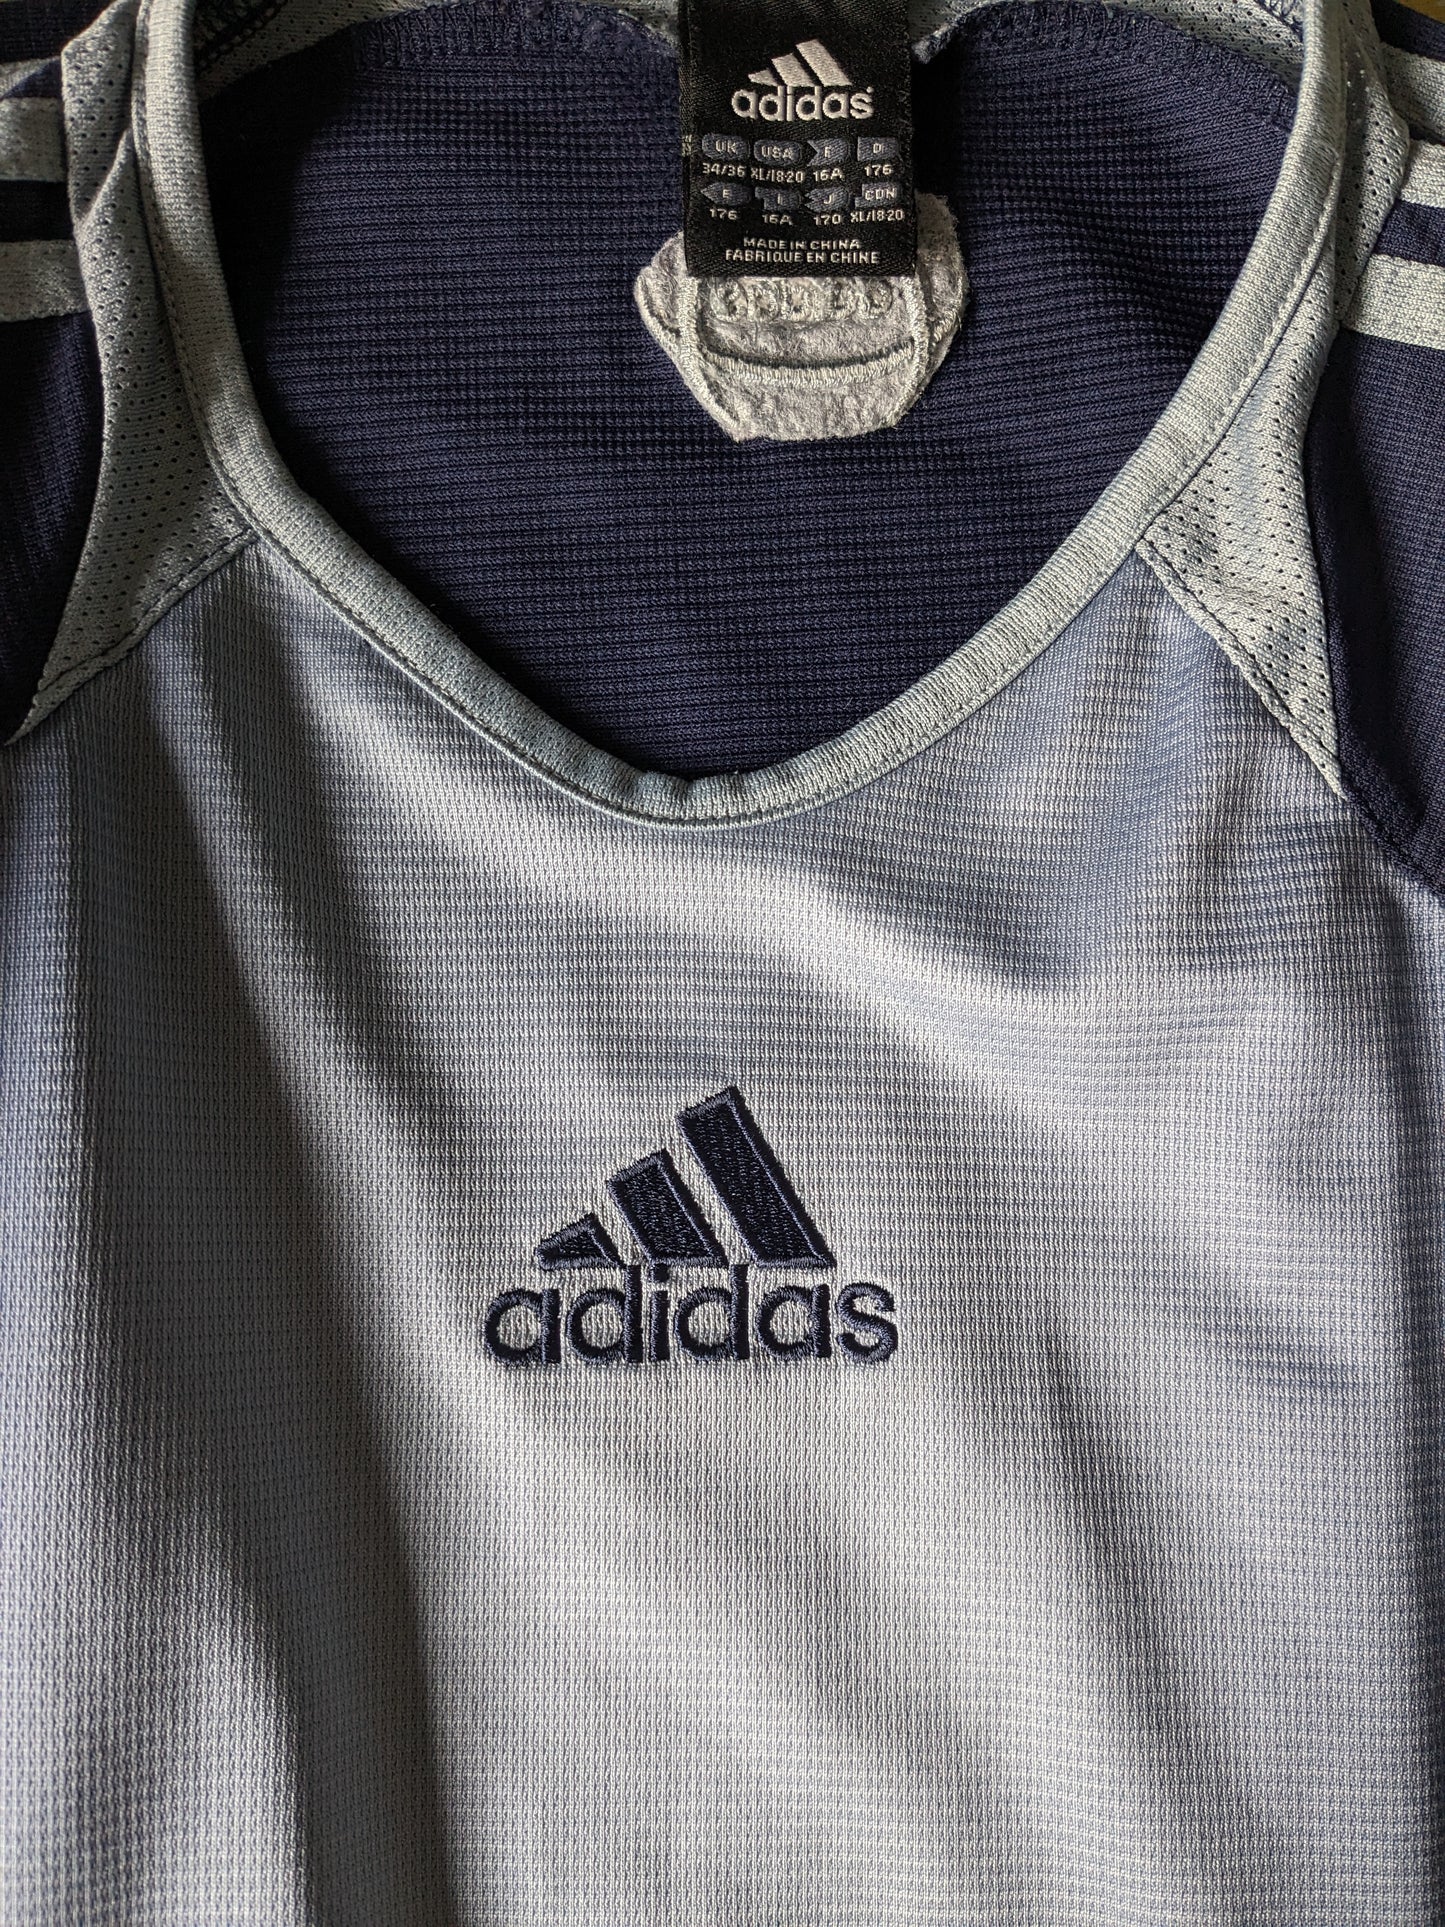 Camisa de Adidas Sport. Color azul. Tamaño S.